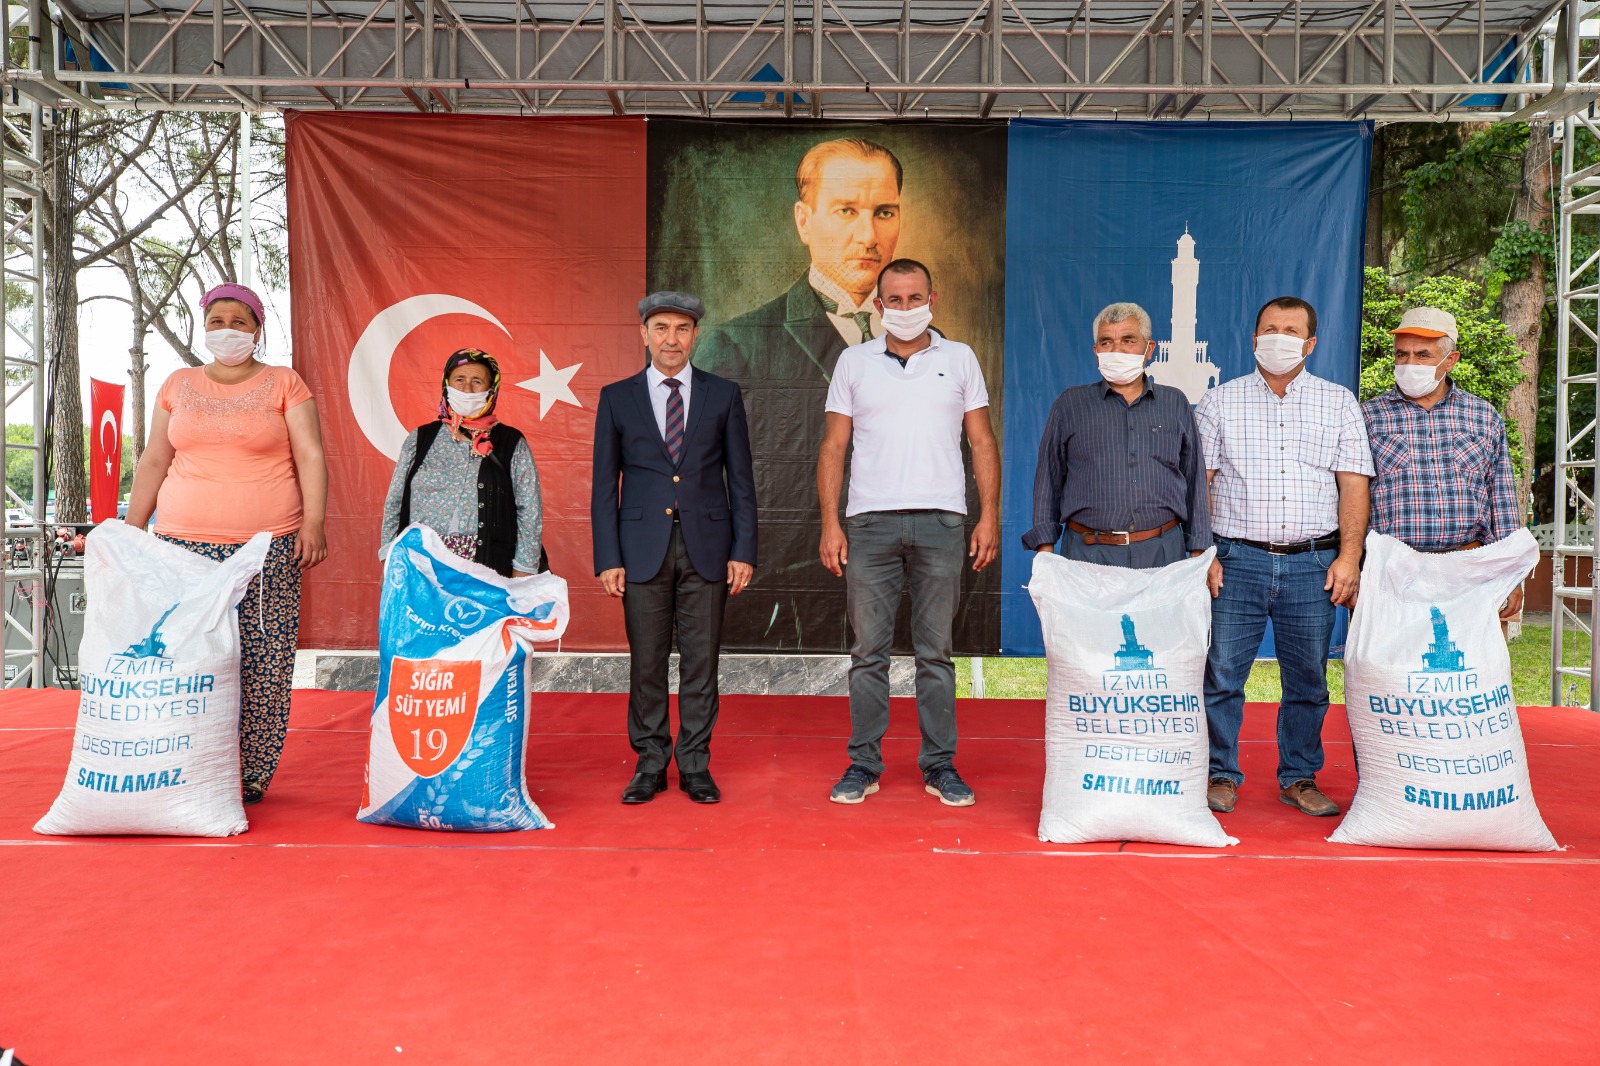 İzmir Büyükşehir Belediyesi’nden köylüye ilk defa yem desteği